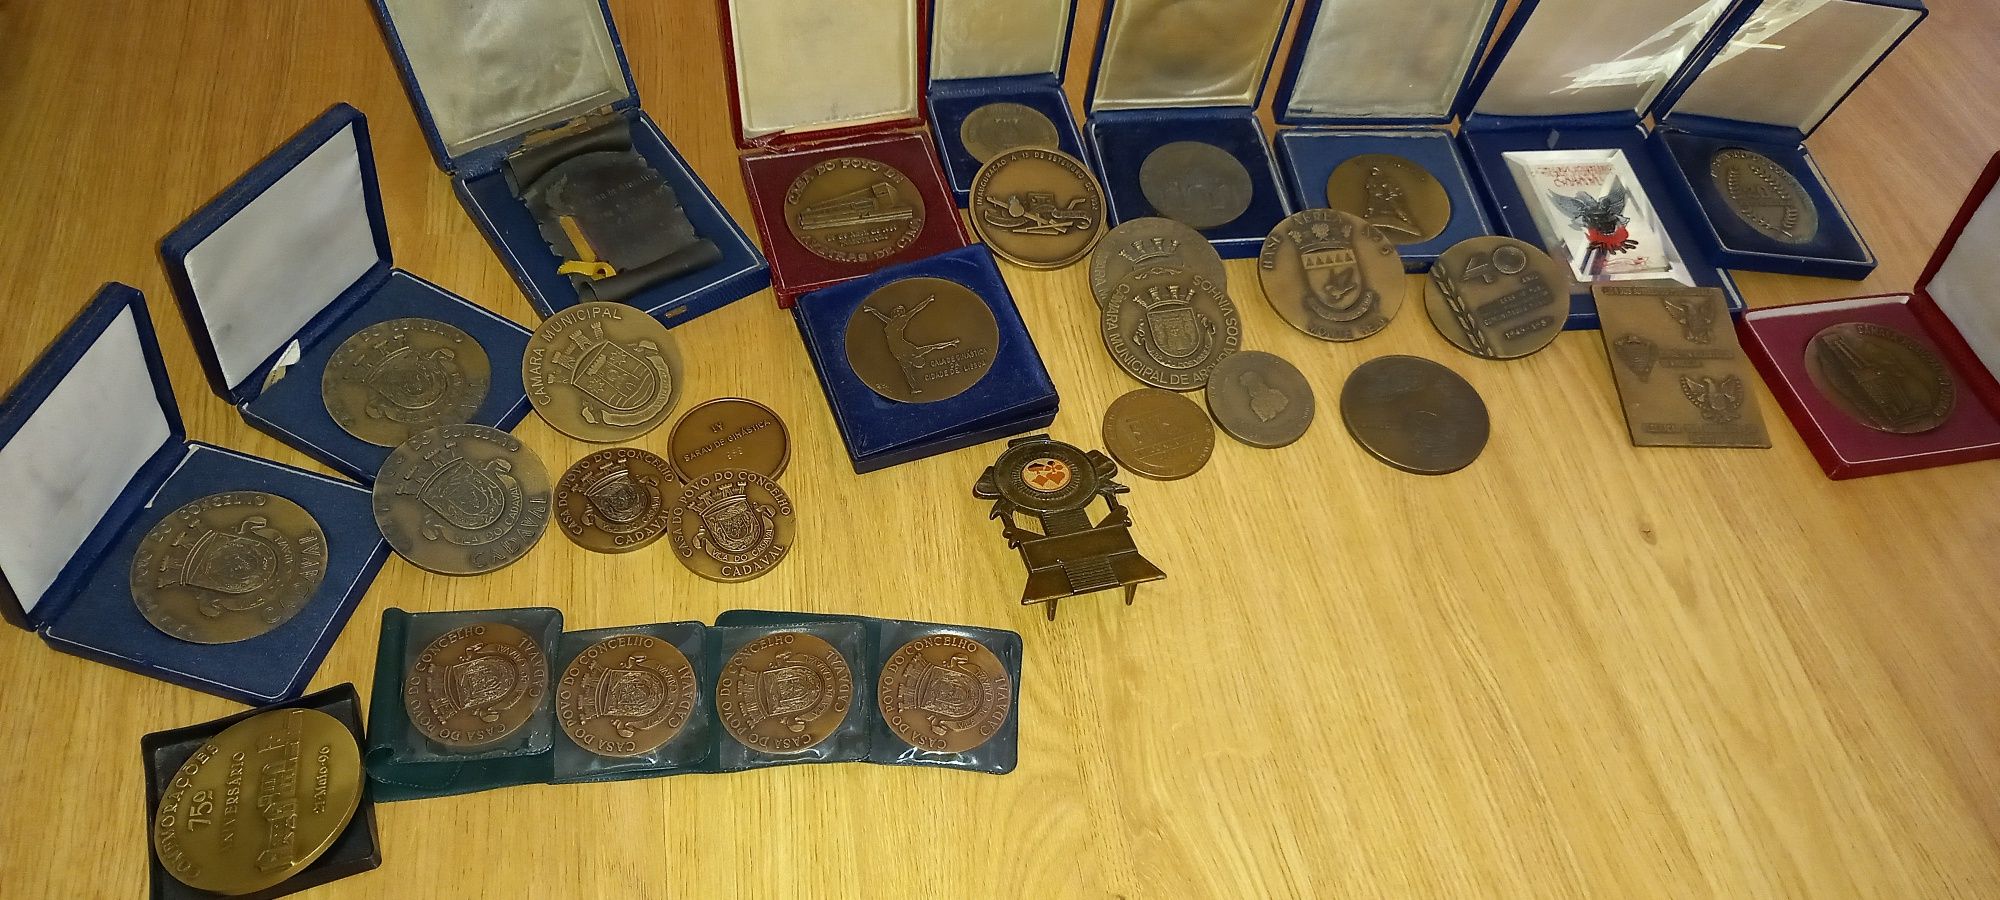 Medalhas de bronze